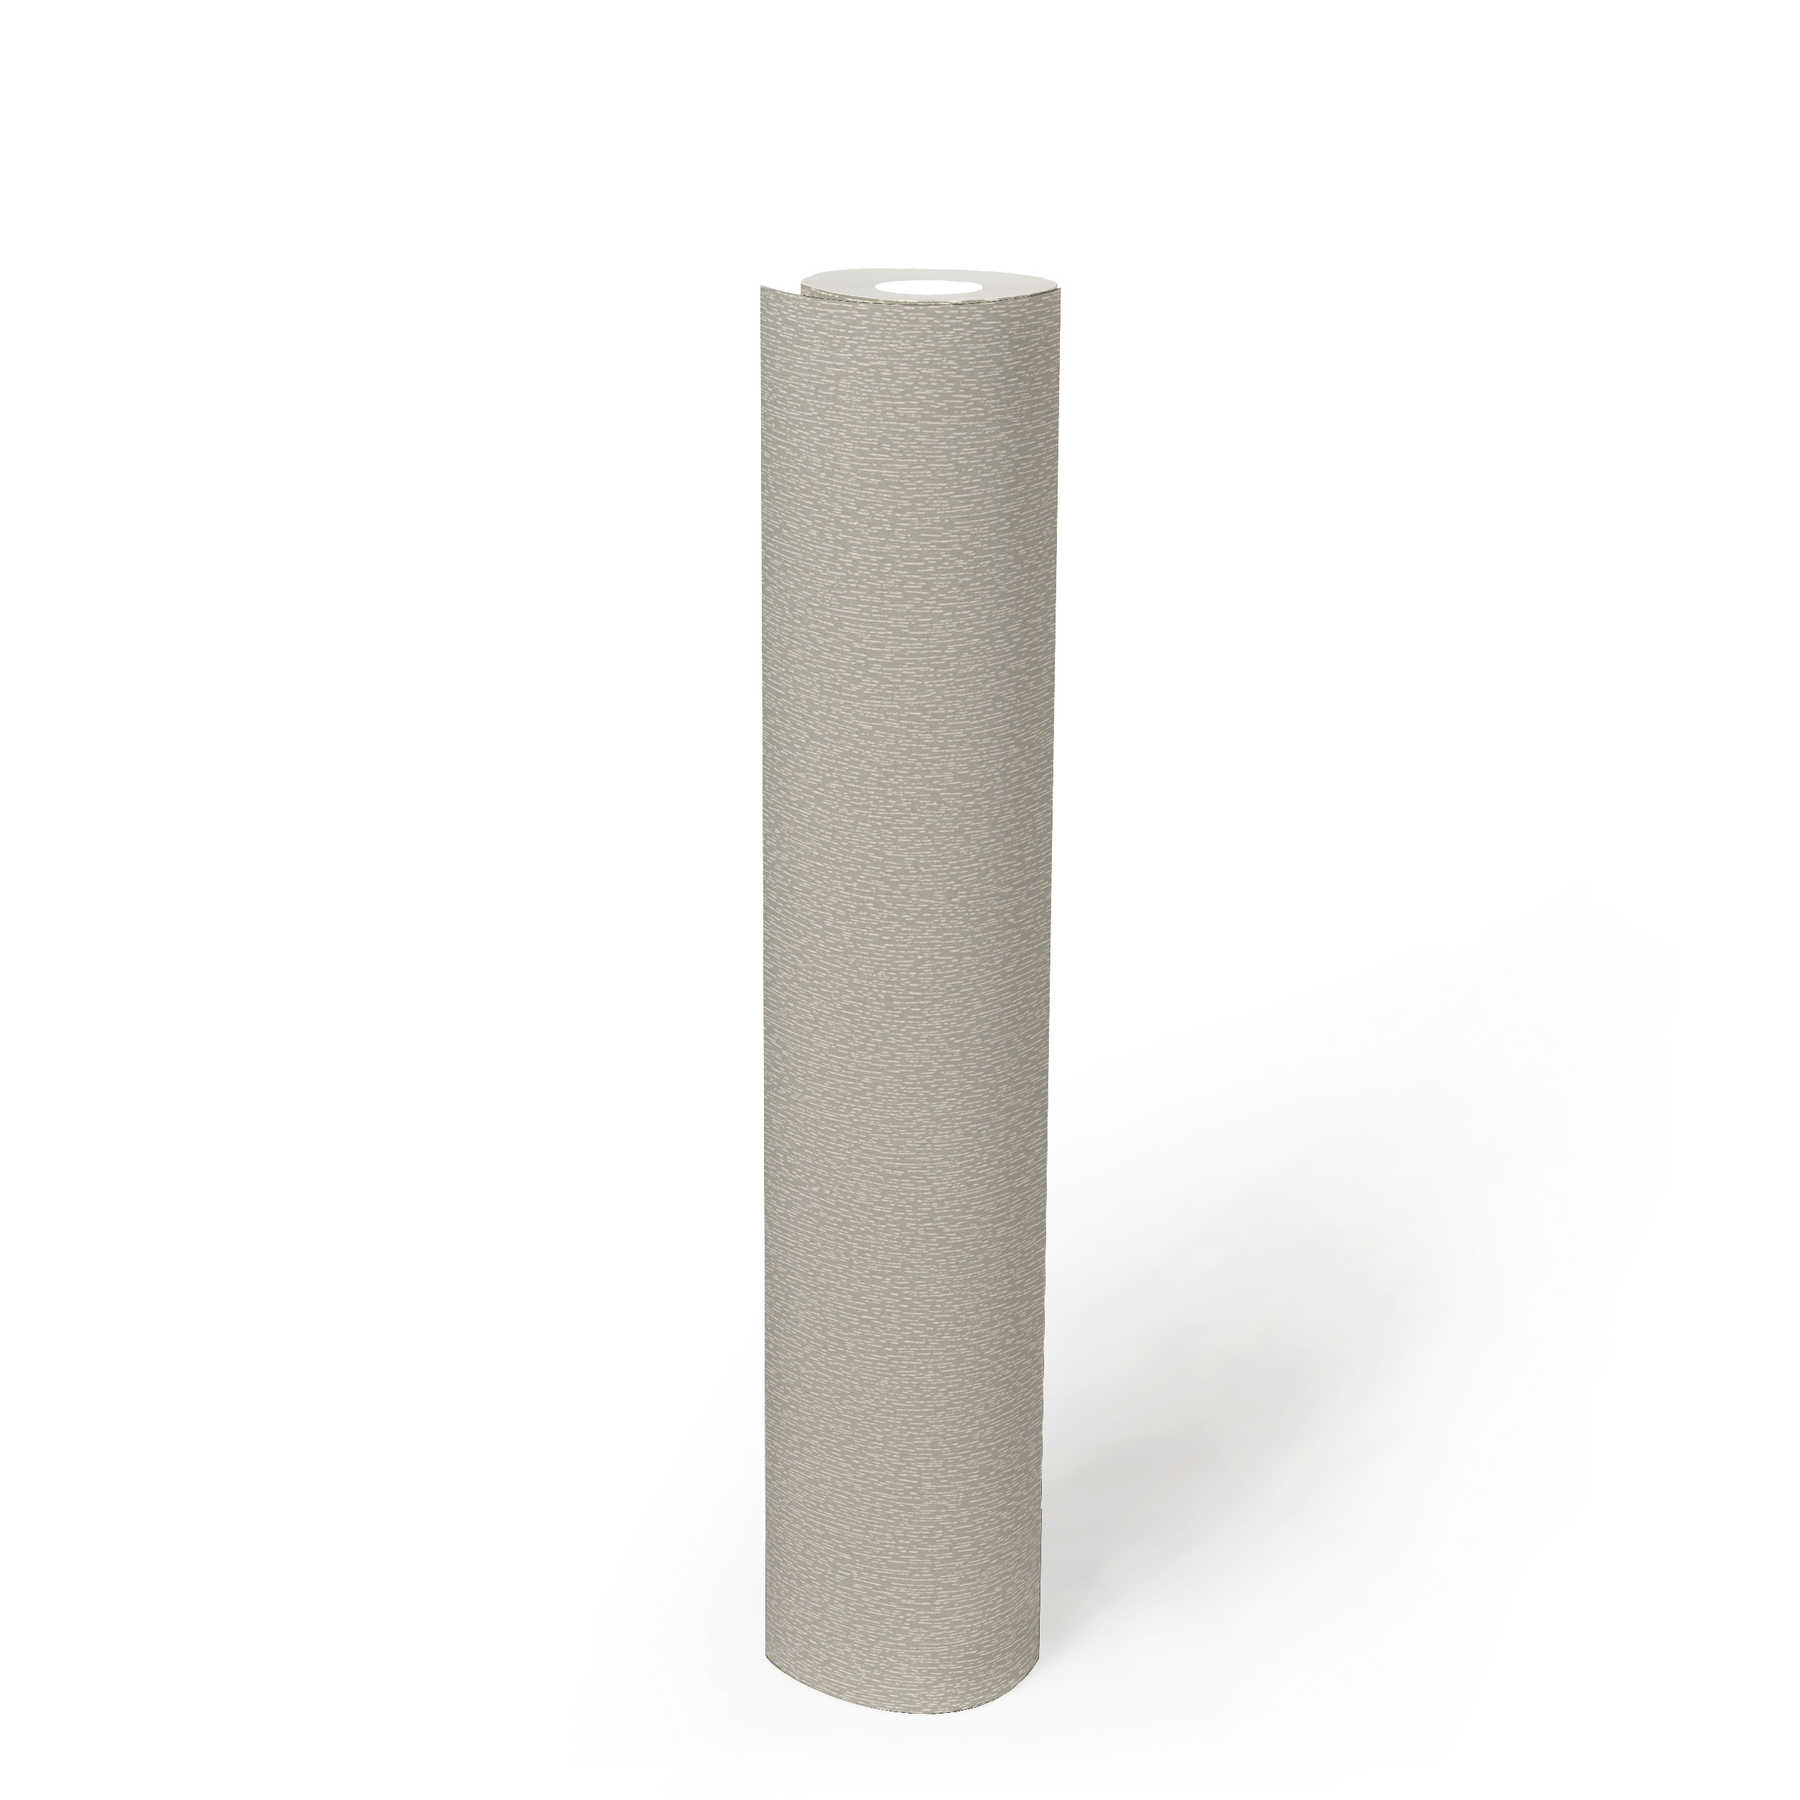             Vliestapete einfarbig mit dezenter Strukturmusterung – Grau, Weiß
        